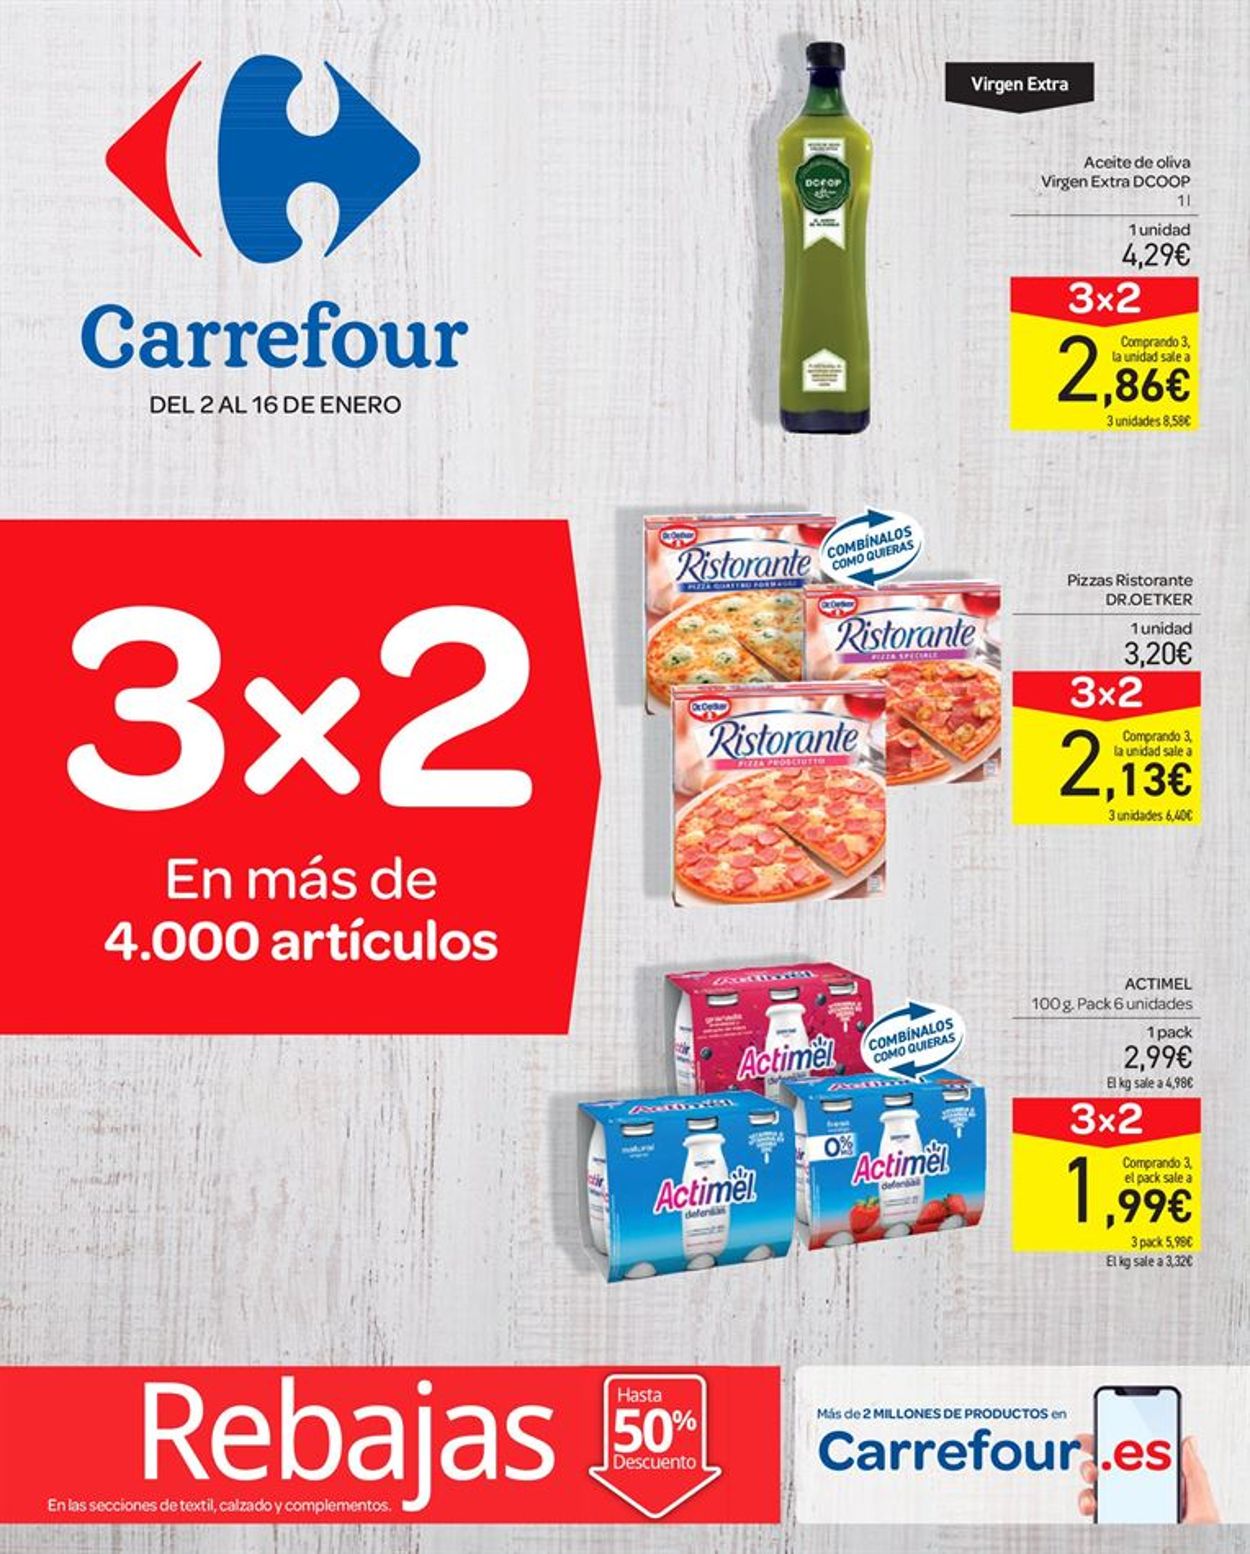 Catálogo Carrefour - Actual - 16.01.2020 Yulak